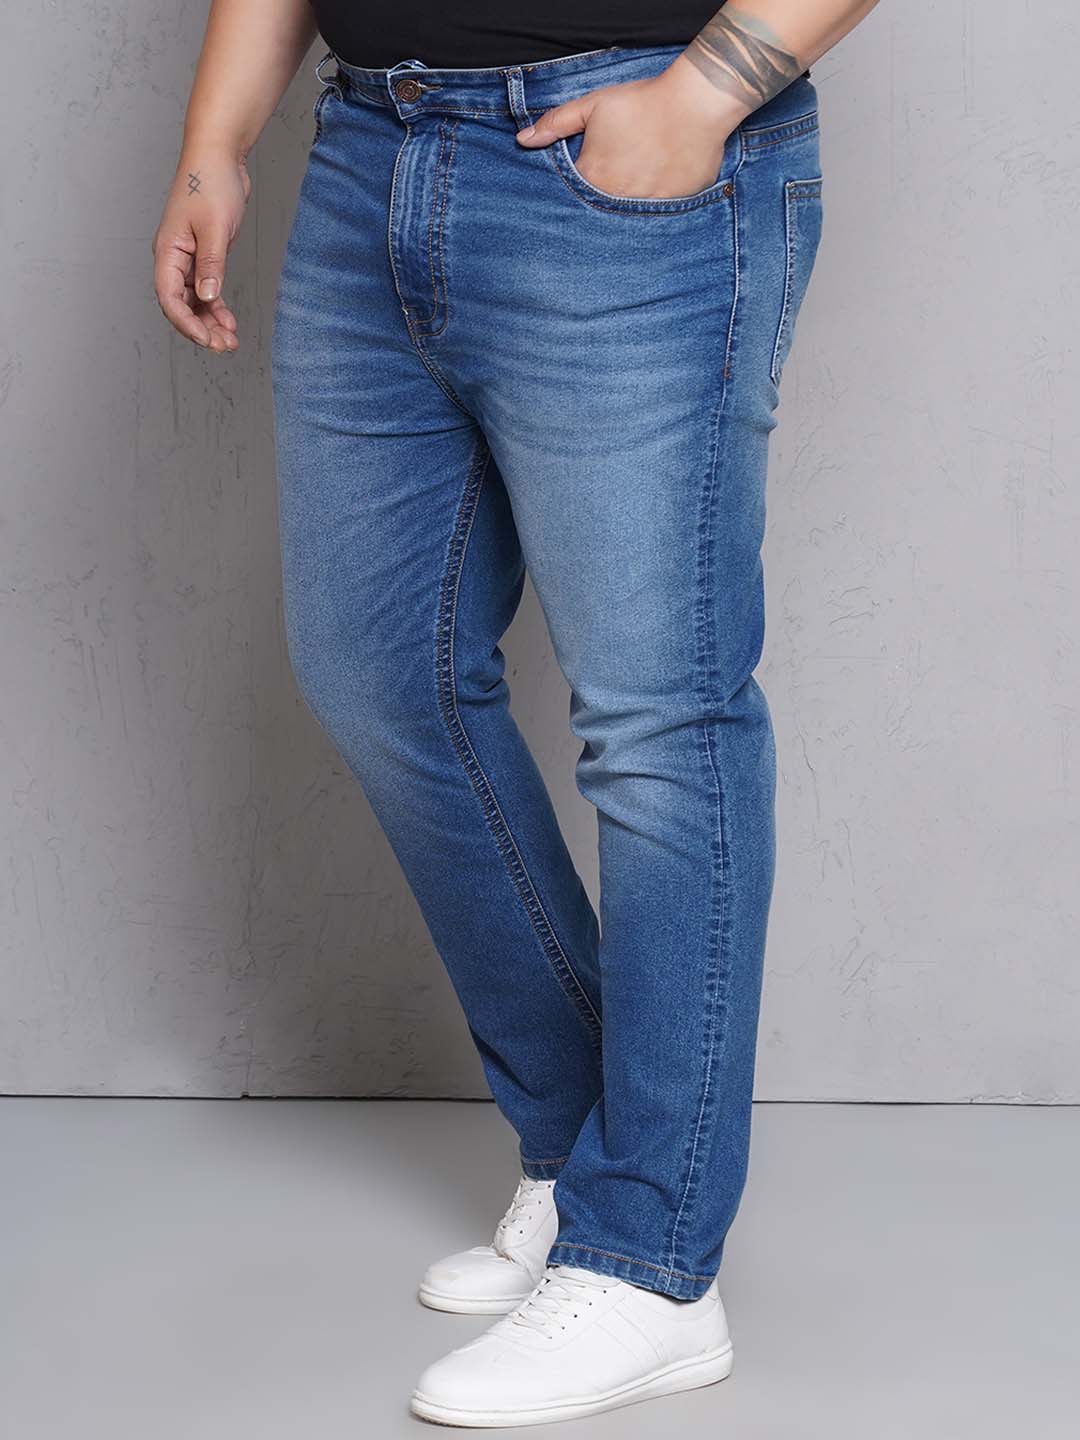 bottomwear/jeans/EJPJ25149/ejpj25149-3.jpg